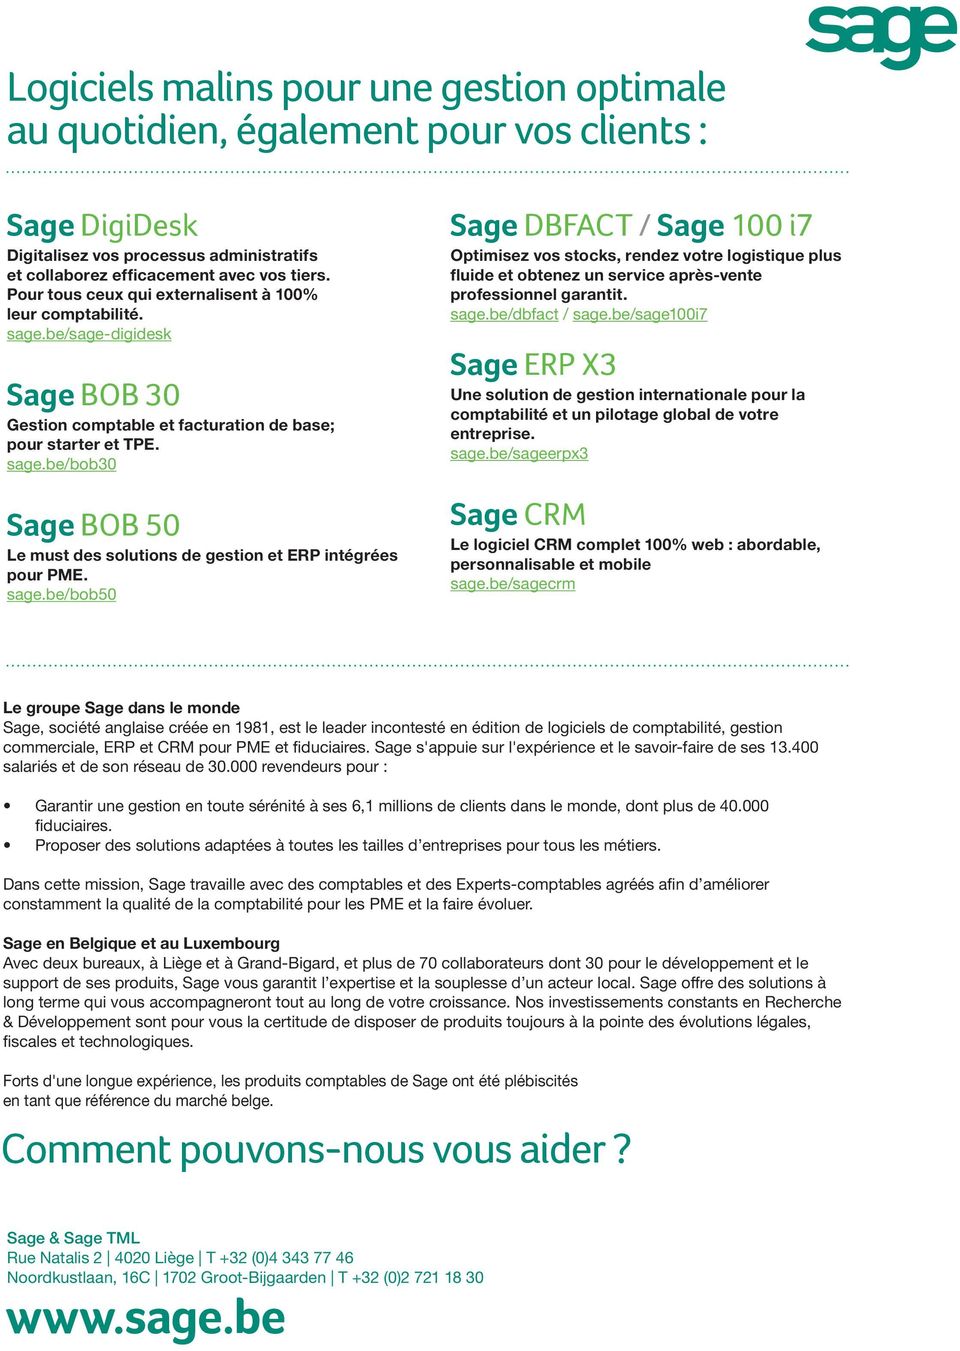 sage.be/bob50 Sage DBFACT / Sage 100 i7 Optimisez vos stocks, rendez votre logistique plus fluide et obtenez un service après-vente professionnel garantit. sage.be/dbfact / sage.